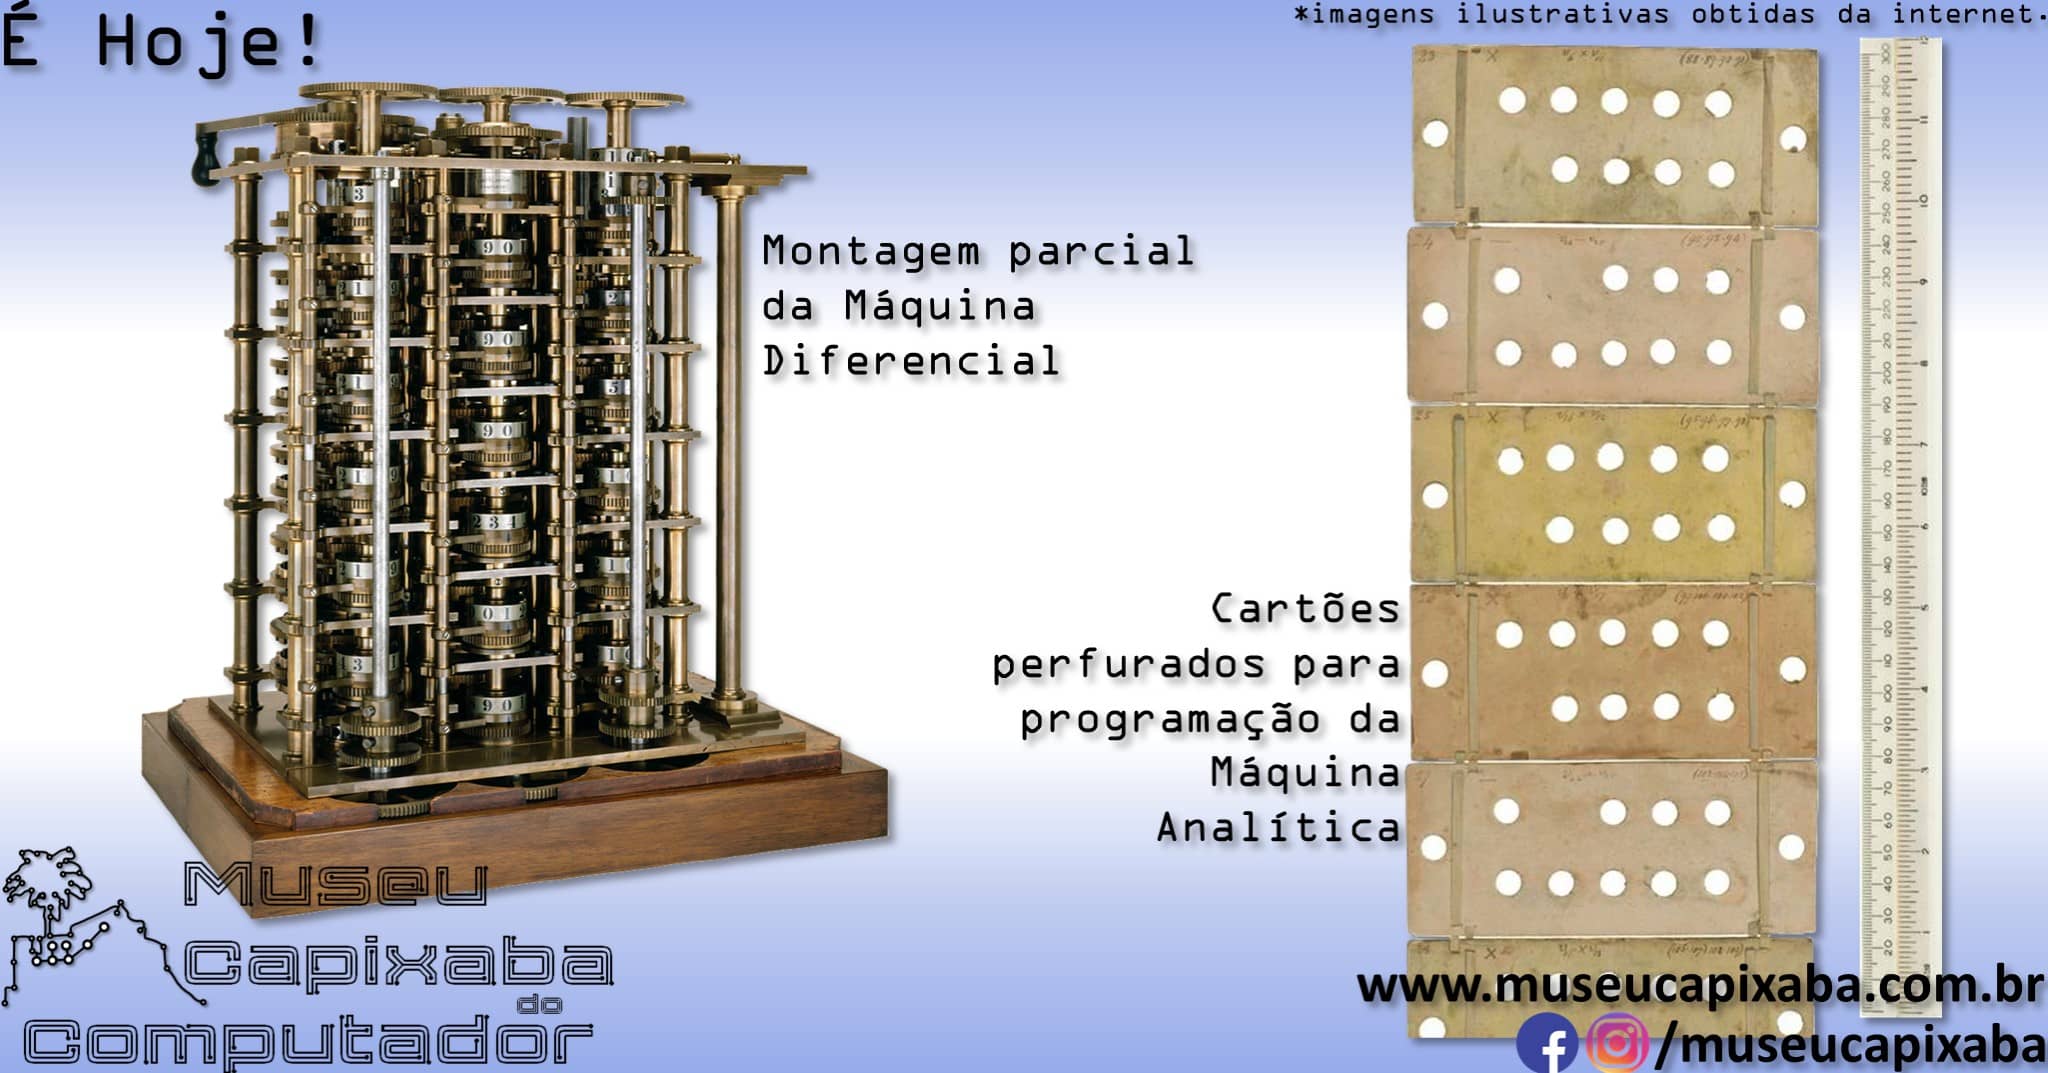 Charles Babbage publicava artigo sobre a Maquina Analitica 4